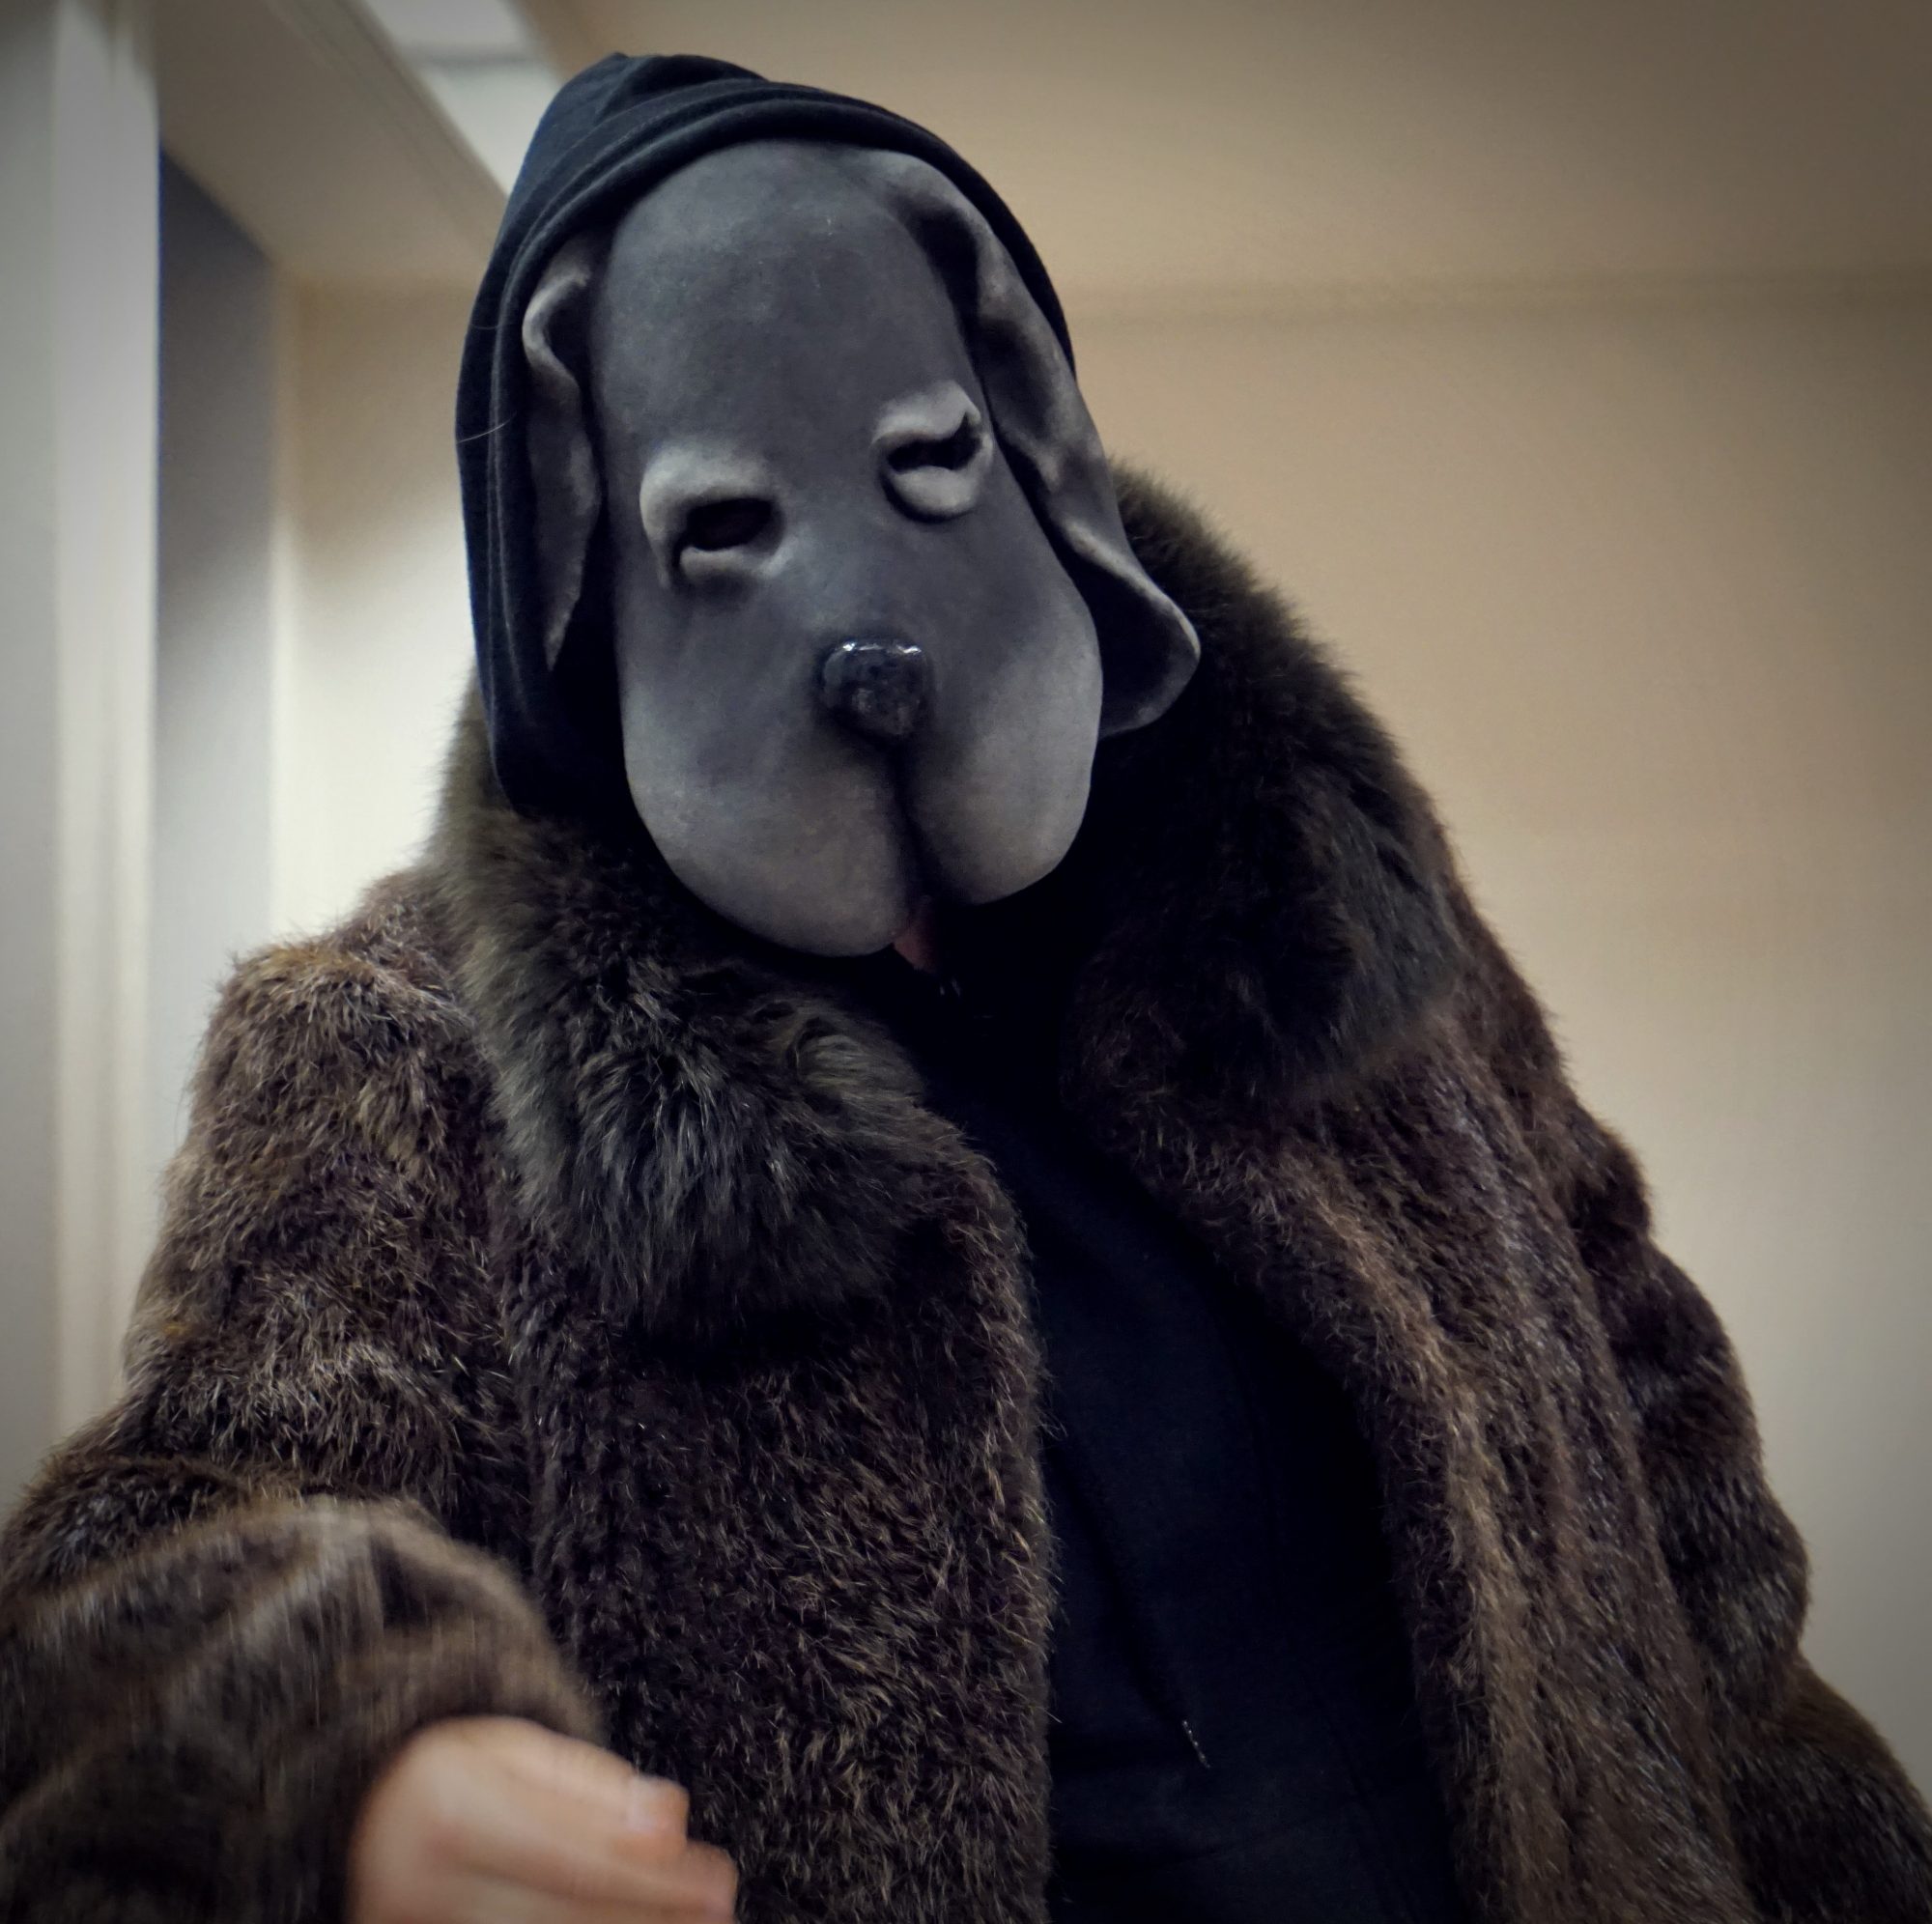 Probenfoto 'Der schwarze Hund', Figurenspielerin Julia Raab mit Vollmaske